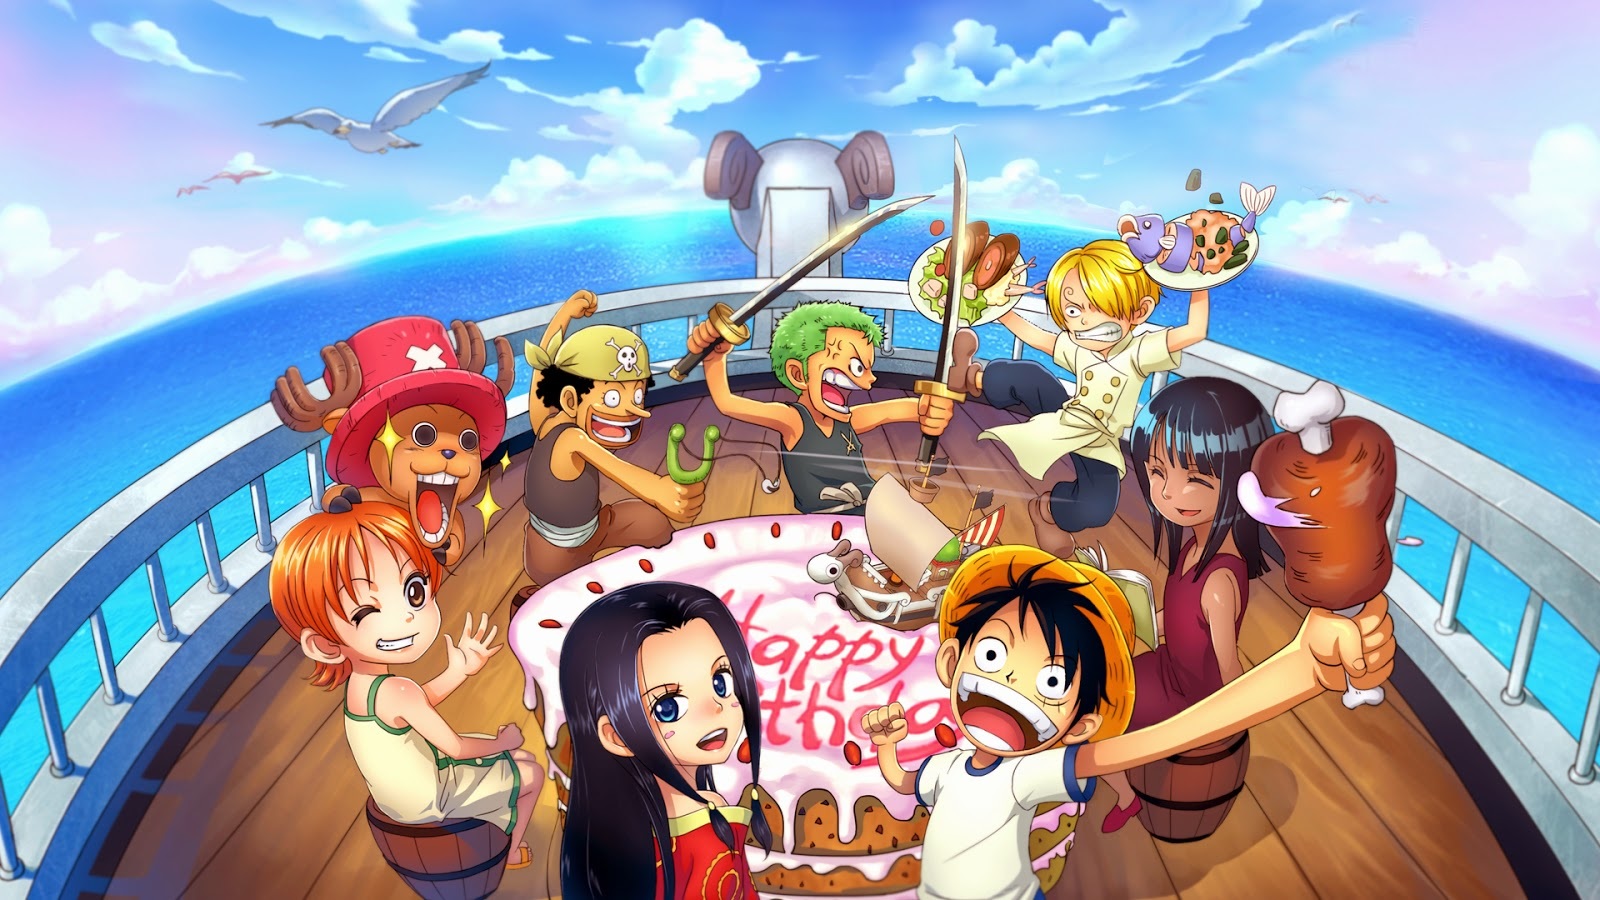 Thiết kế nhân vật trong bộ truyện One Piece luôn là một đề tài nóng hổi của các fan hâm mộ anime. Những hình ảnh anime nam được phác họa và tô màu đầy chất lượng, thiết kế cá tính và cuốn hút sẽ khiến người xem phải xiêu lòng. Nếu bạn đang tìm kiếm những bức ảnh anime nam One Piece đẹp nhất, hãy liên tục cập nhật trên internet để không bỏ lỡ bất kỳ hình ảnh đẹp nào.